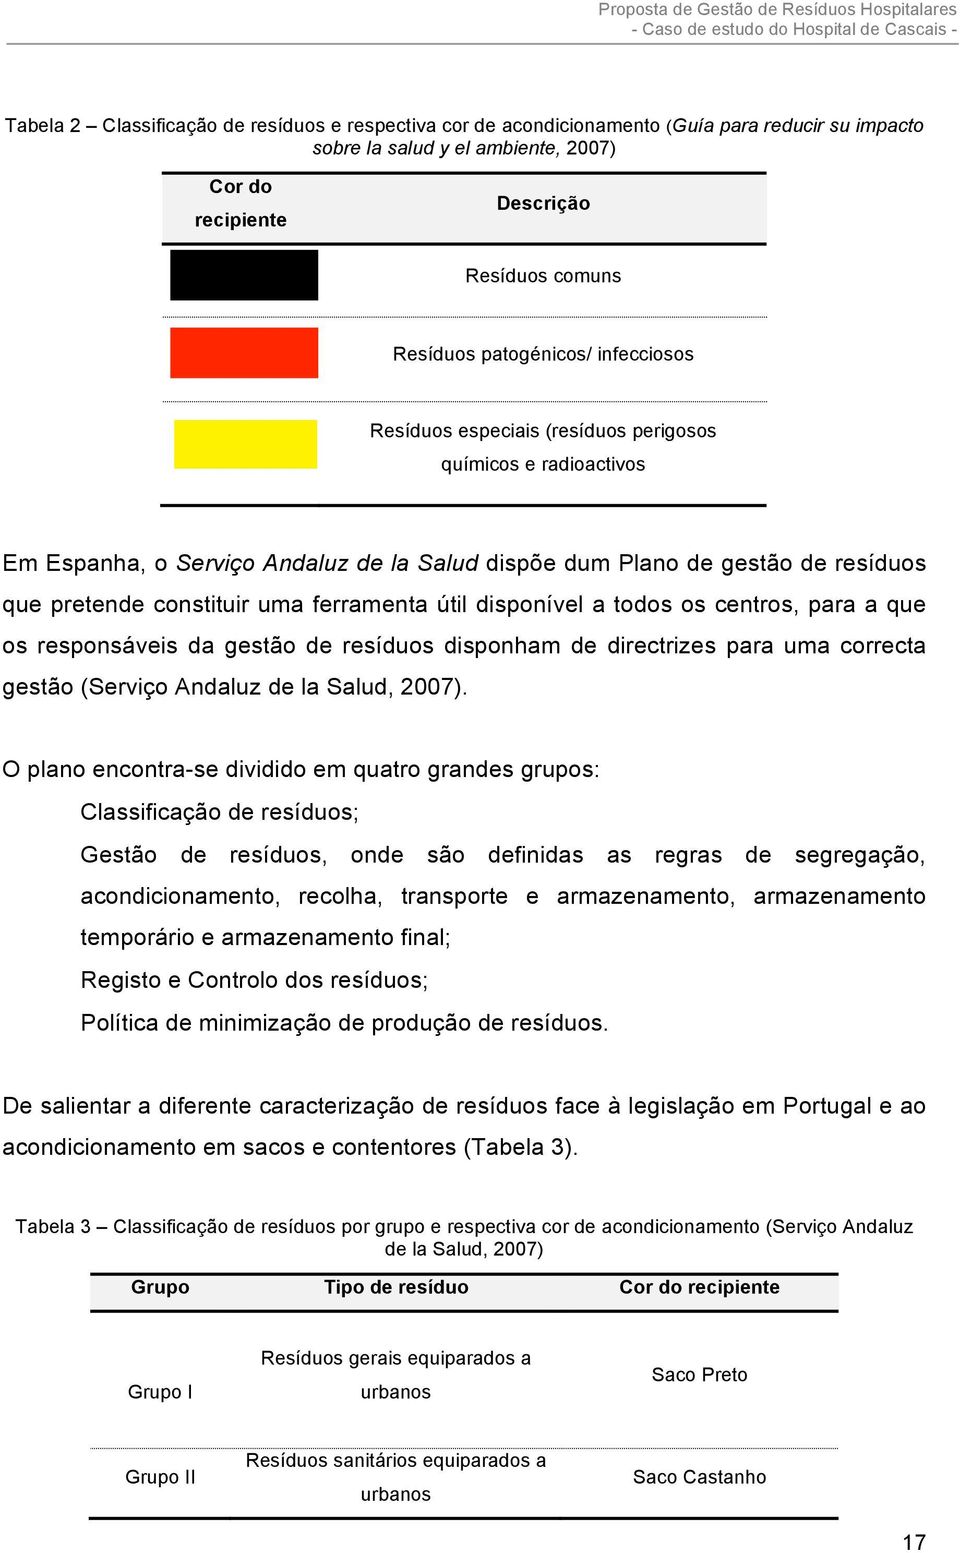 ferramenta útil disponível a todos os centros, para a que os responsáveis da gestão de resíduos disponham de directrizes para uma correcta gestão (Serviço Andaluz de la Salud, 2007).